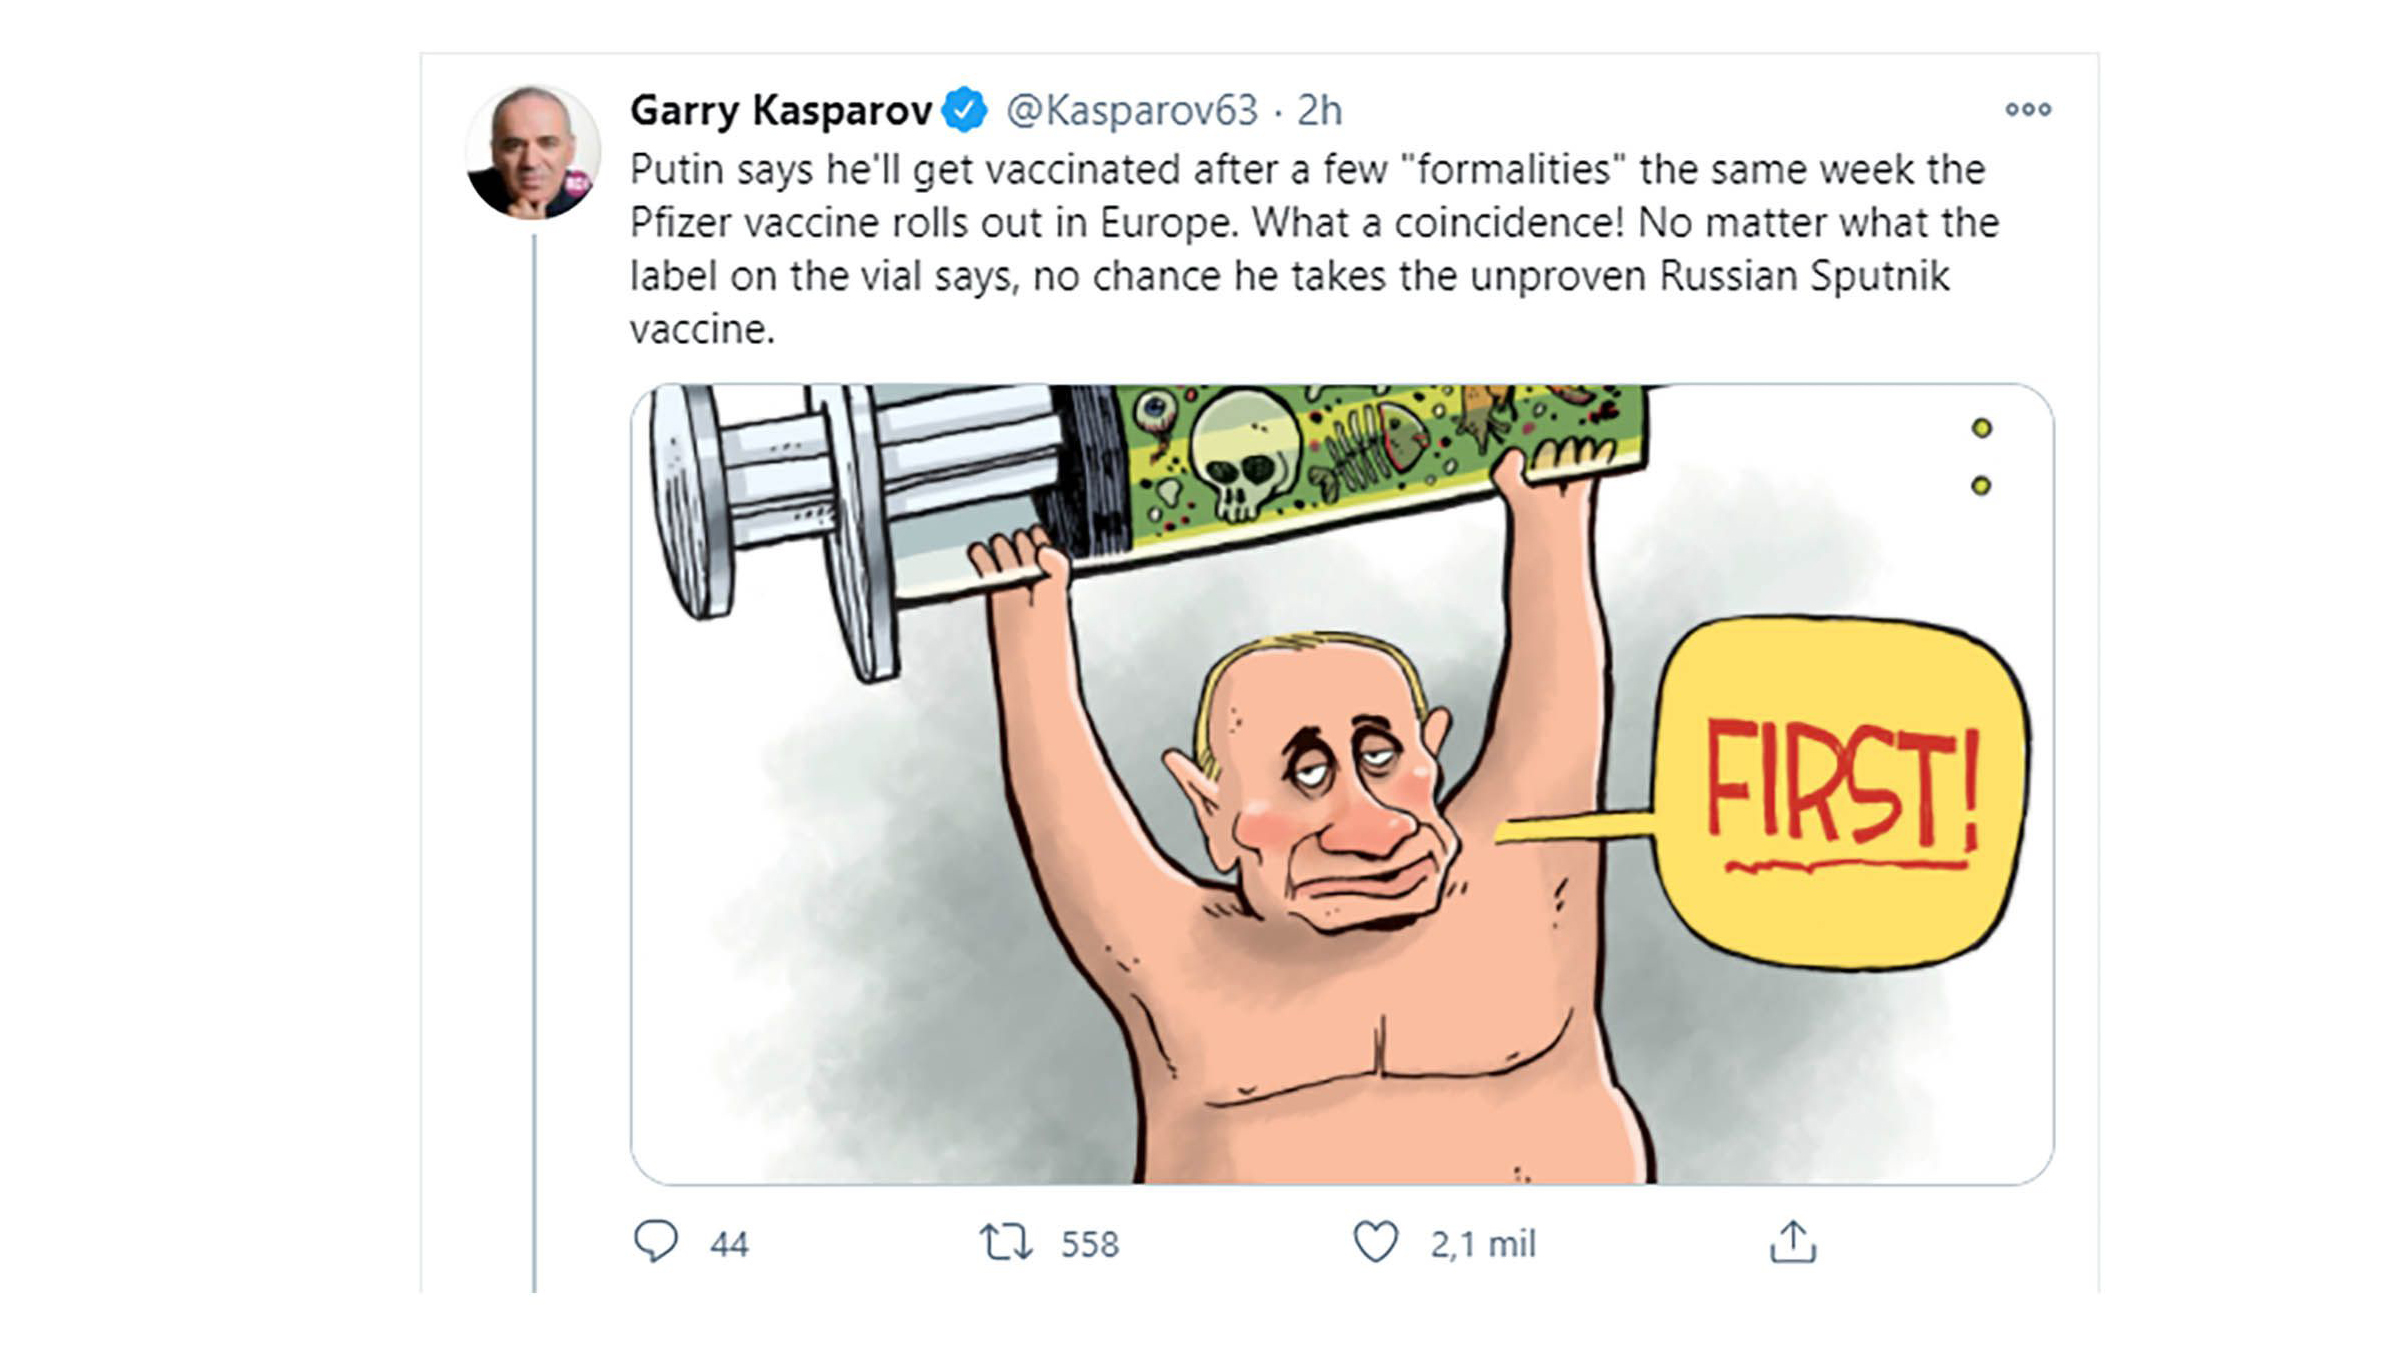 Garry Kasparov desconfía de Putin: “No hay ninguna posibilidad de que se vacune con la Sputnik V”